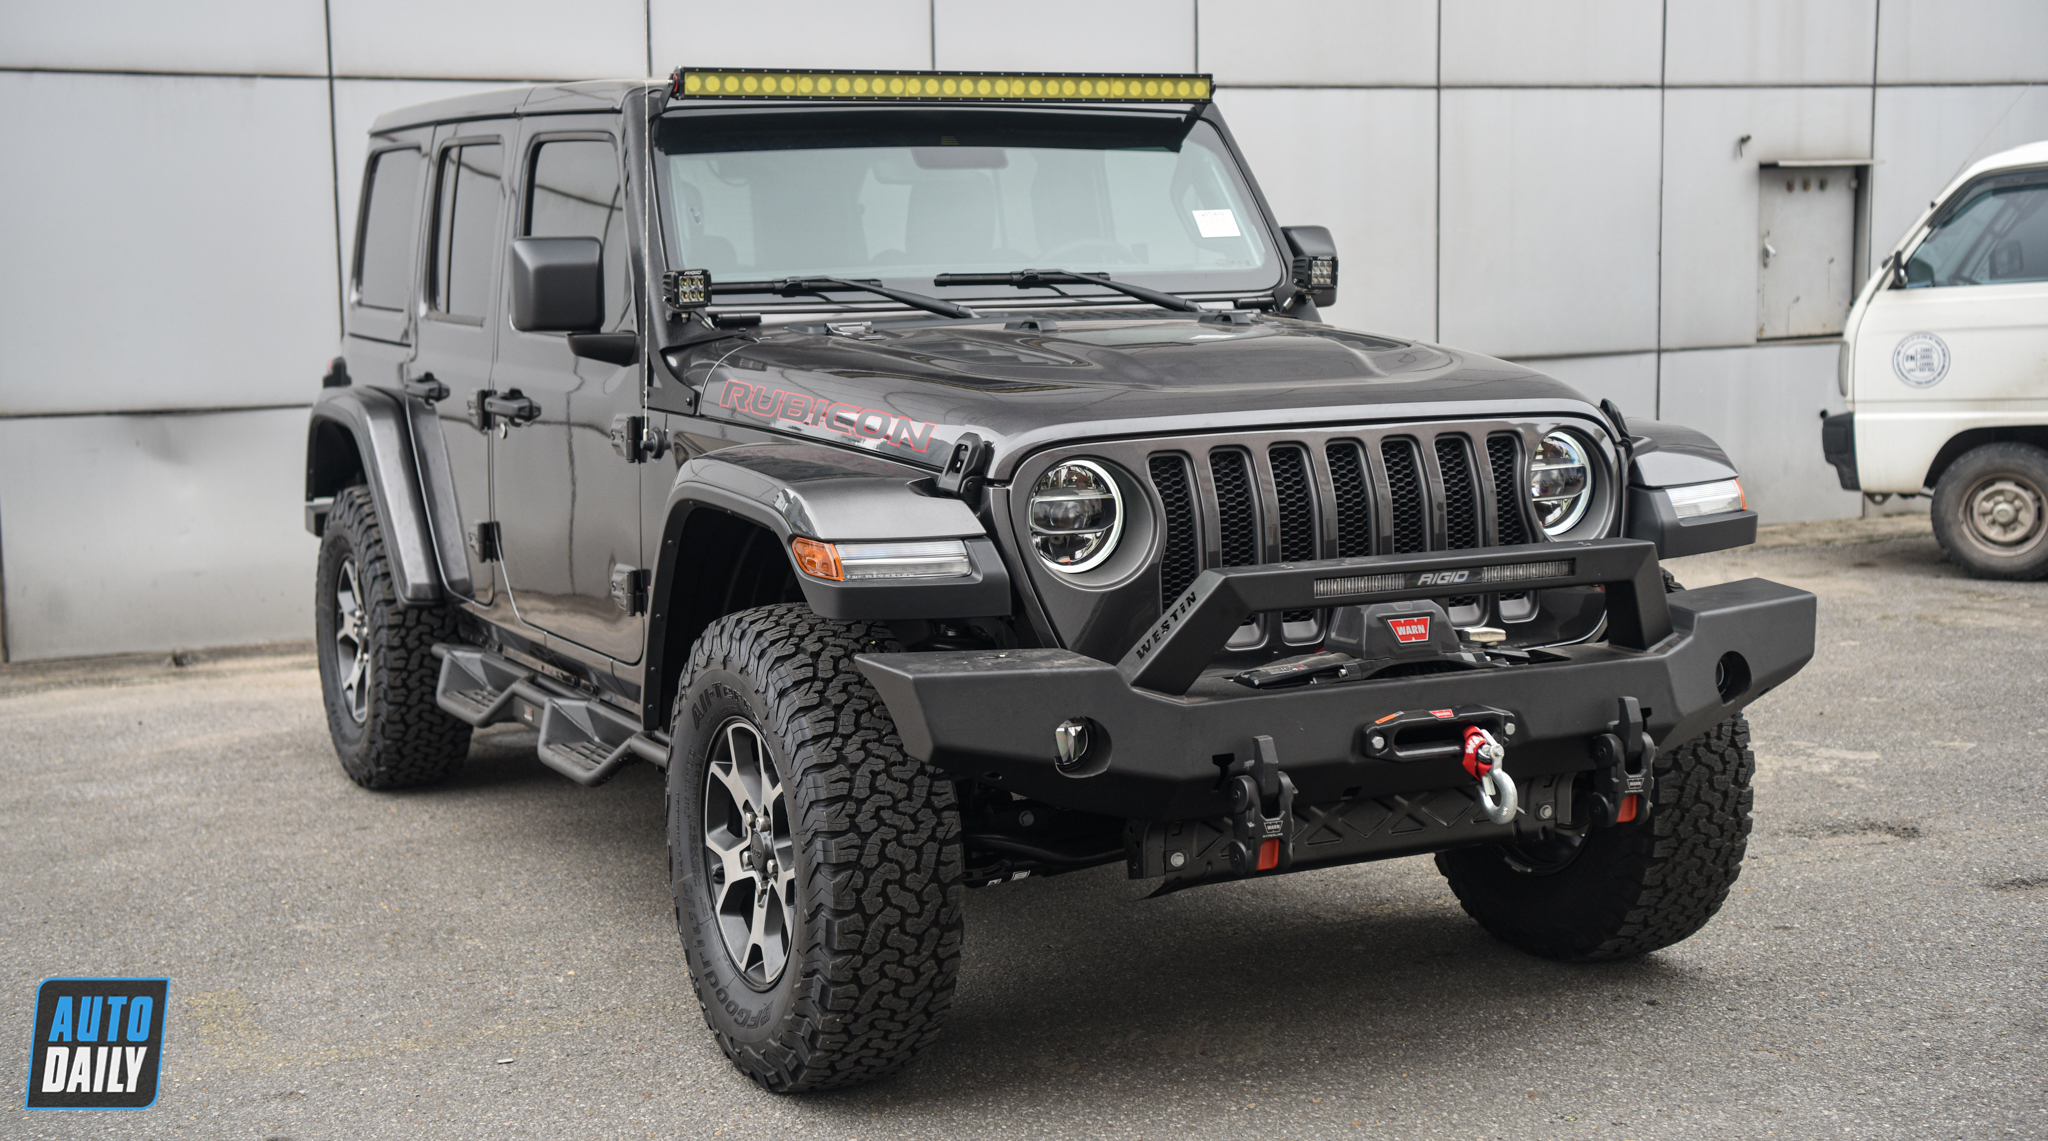 Tìm hiểu chung về xe Jeep và mẫu xe Jeep Wrangler 2020